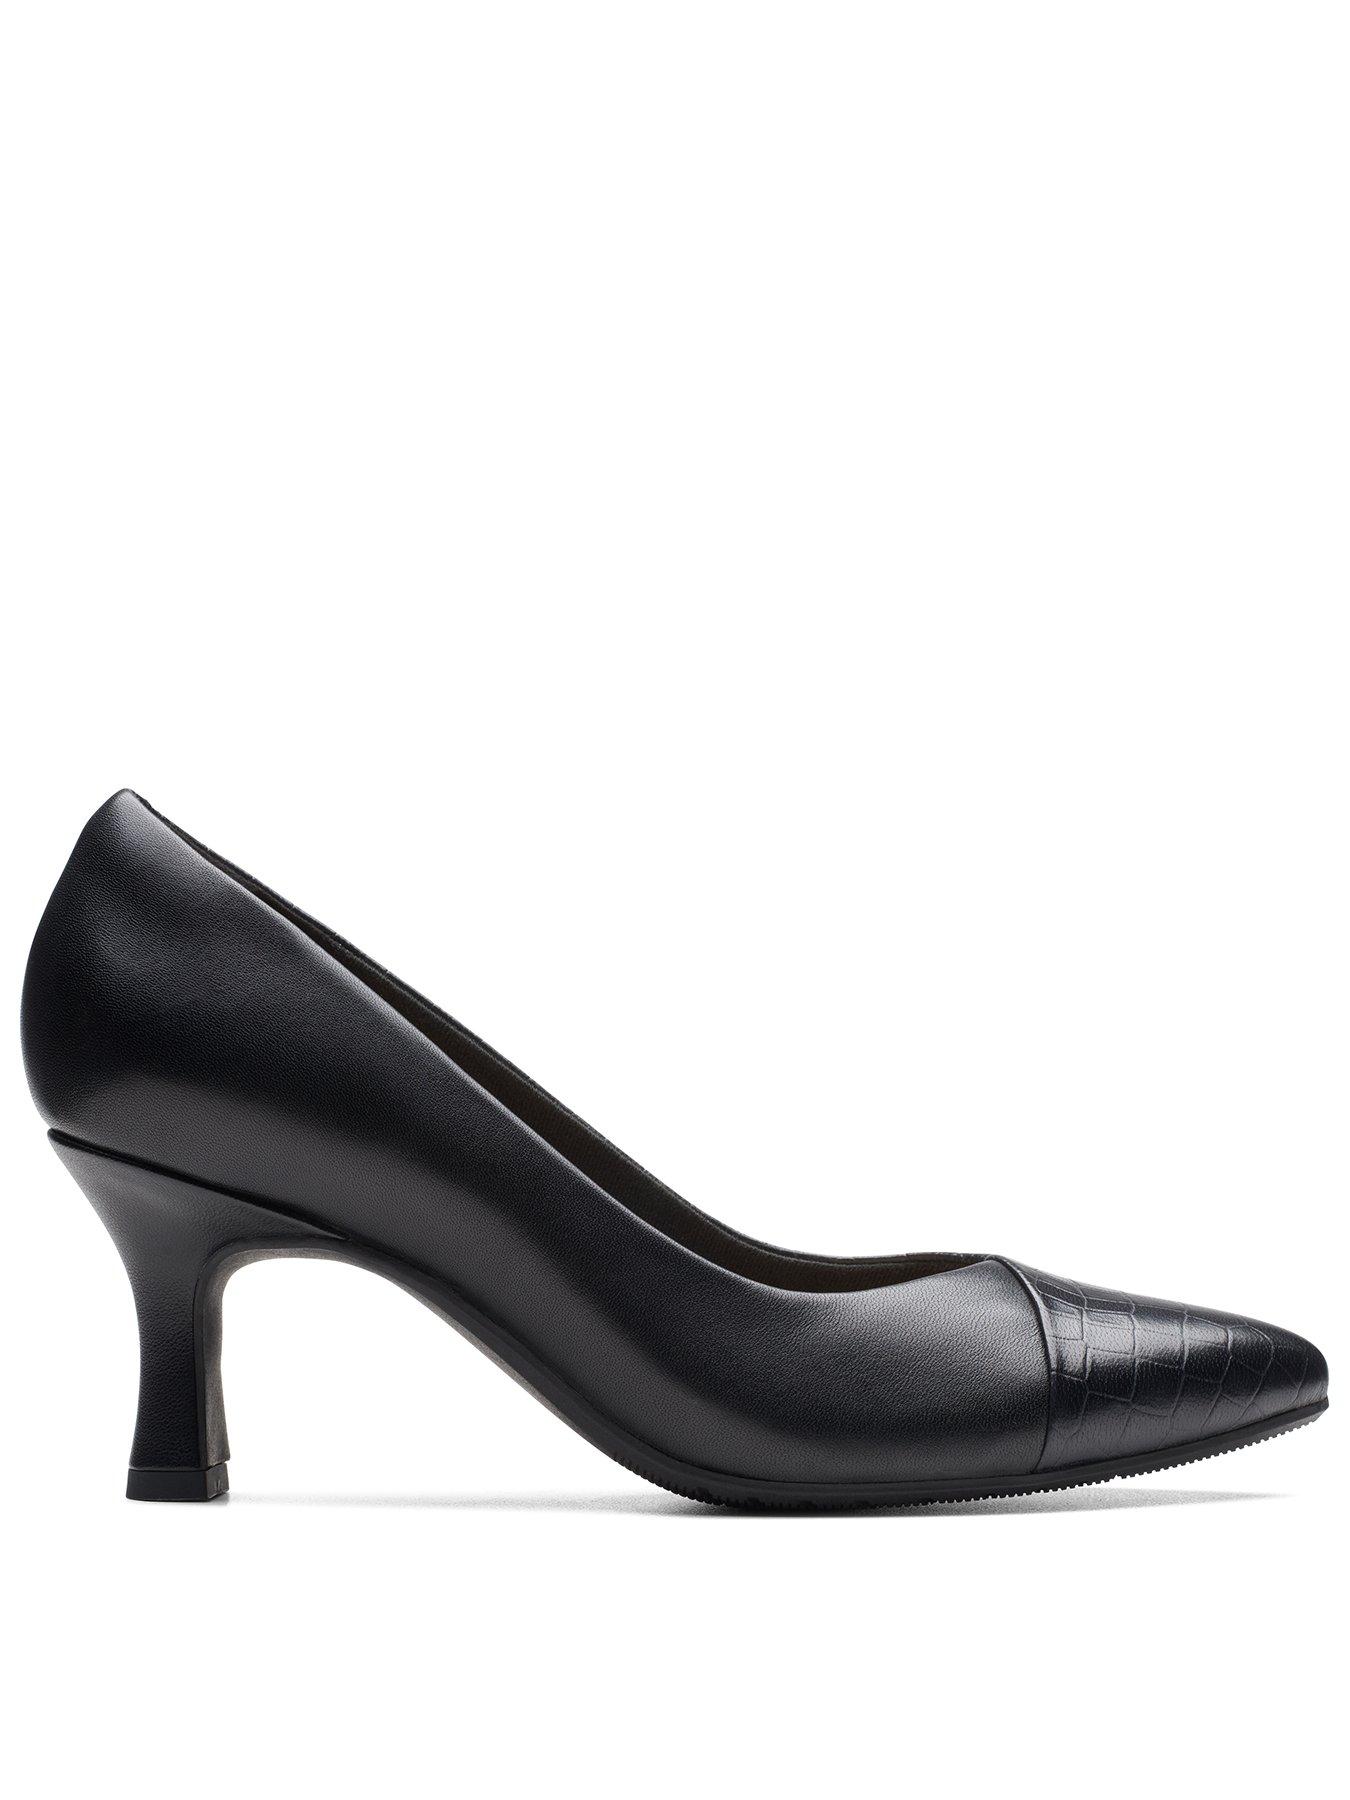 Clarks Kataleyna Rose Shoes - Black Croc | littlewoods.com